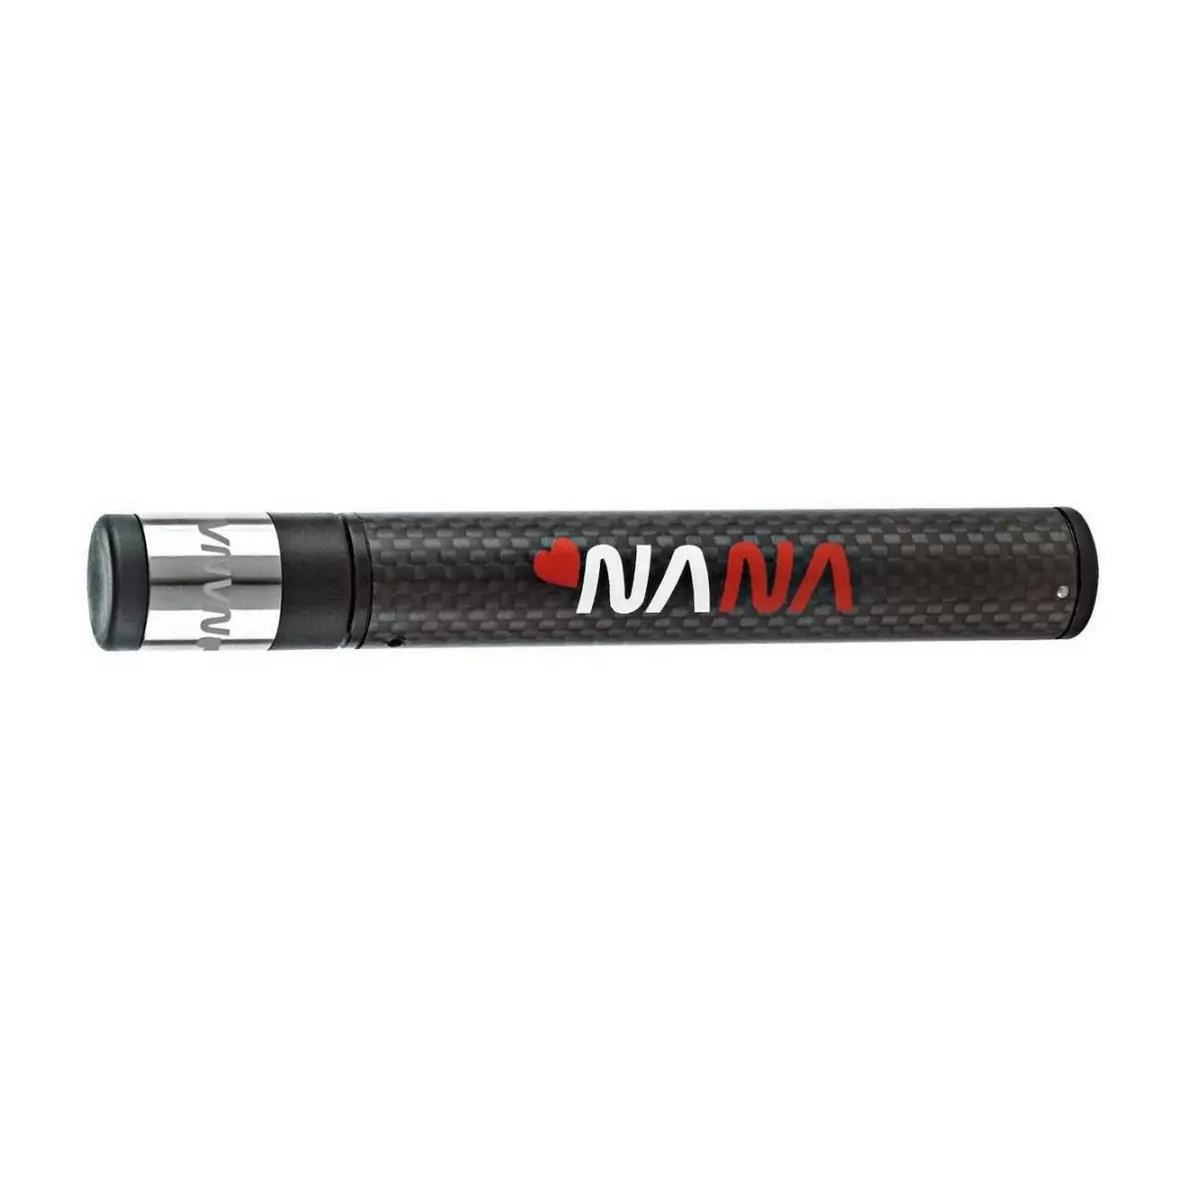 Pompa Nana micro in carbonio/titanio - image